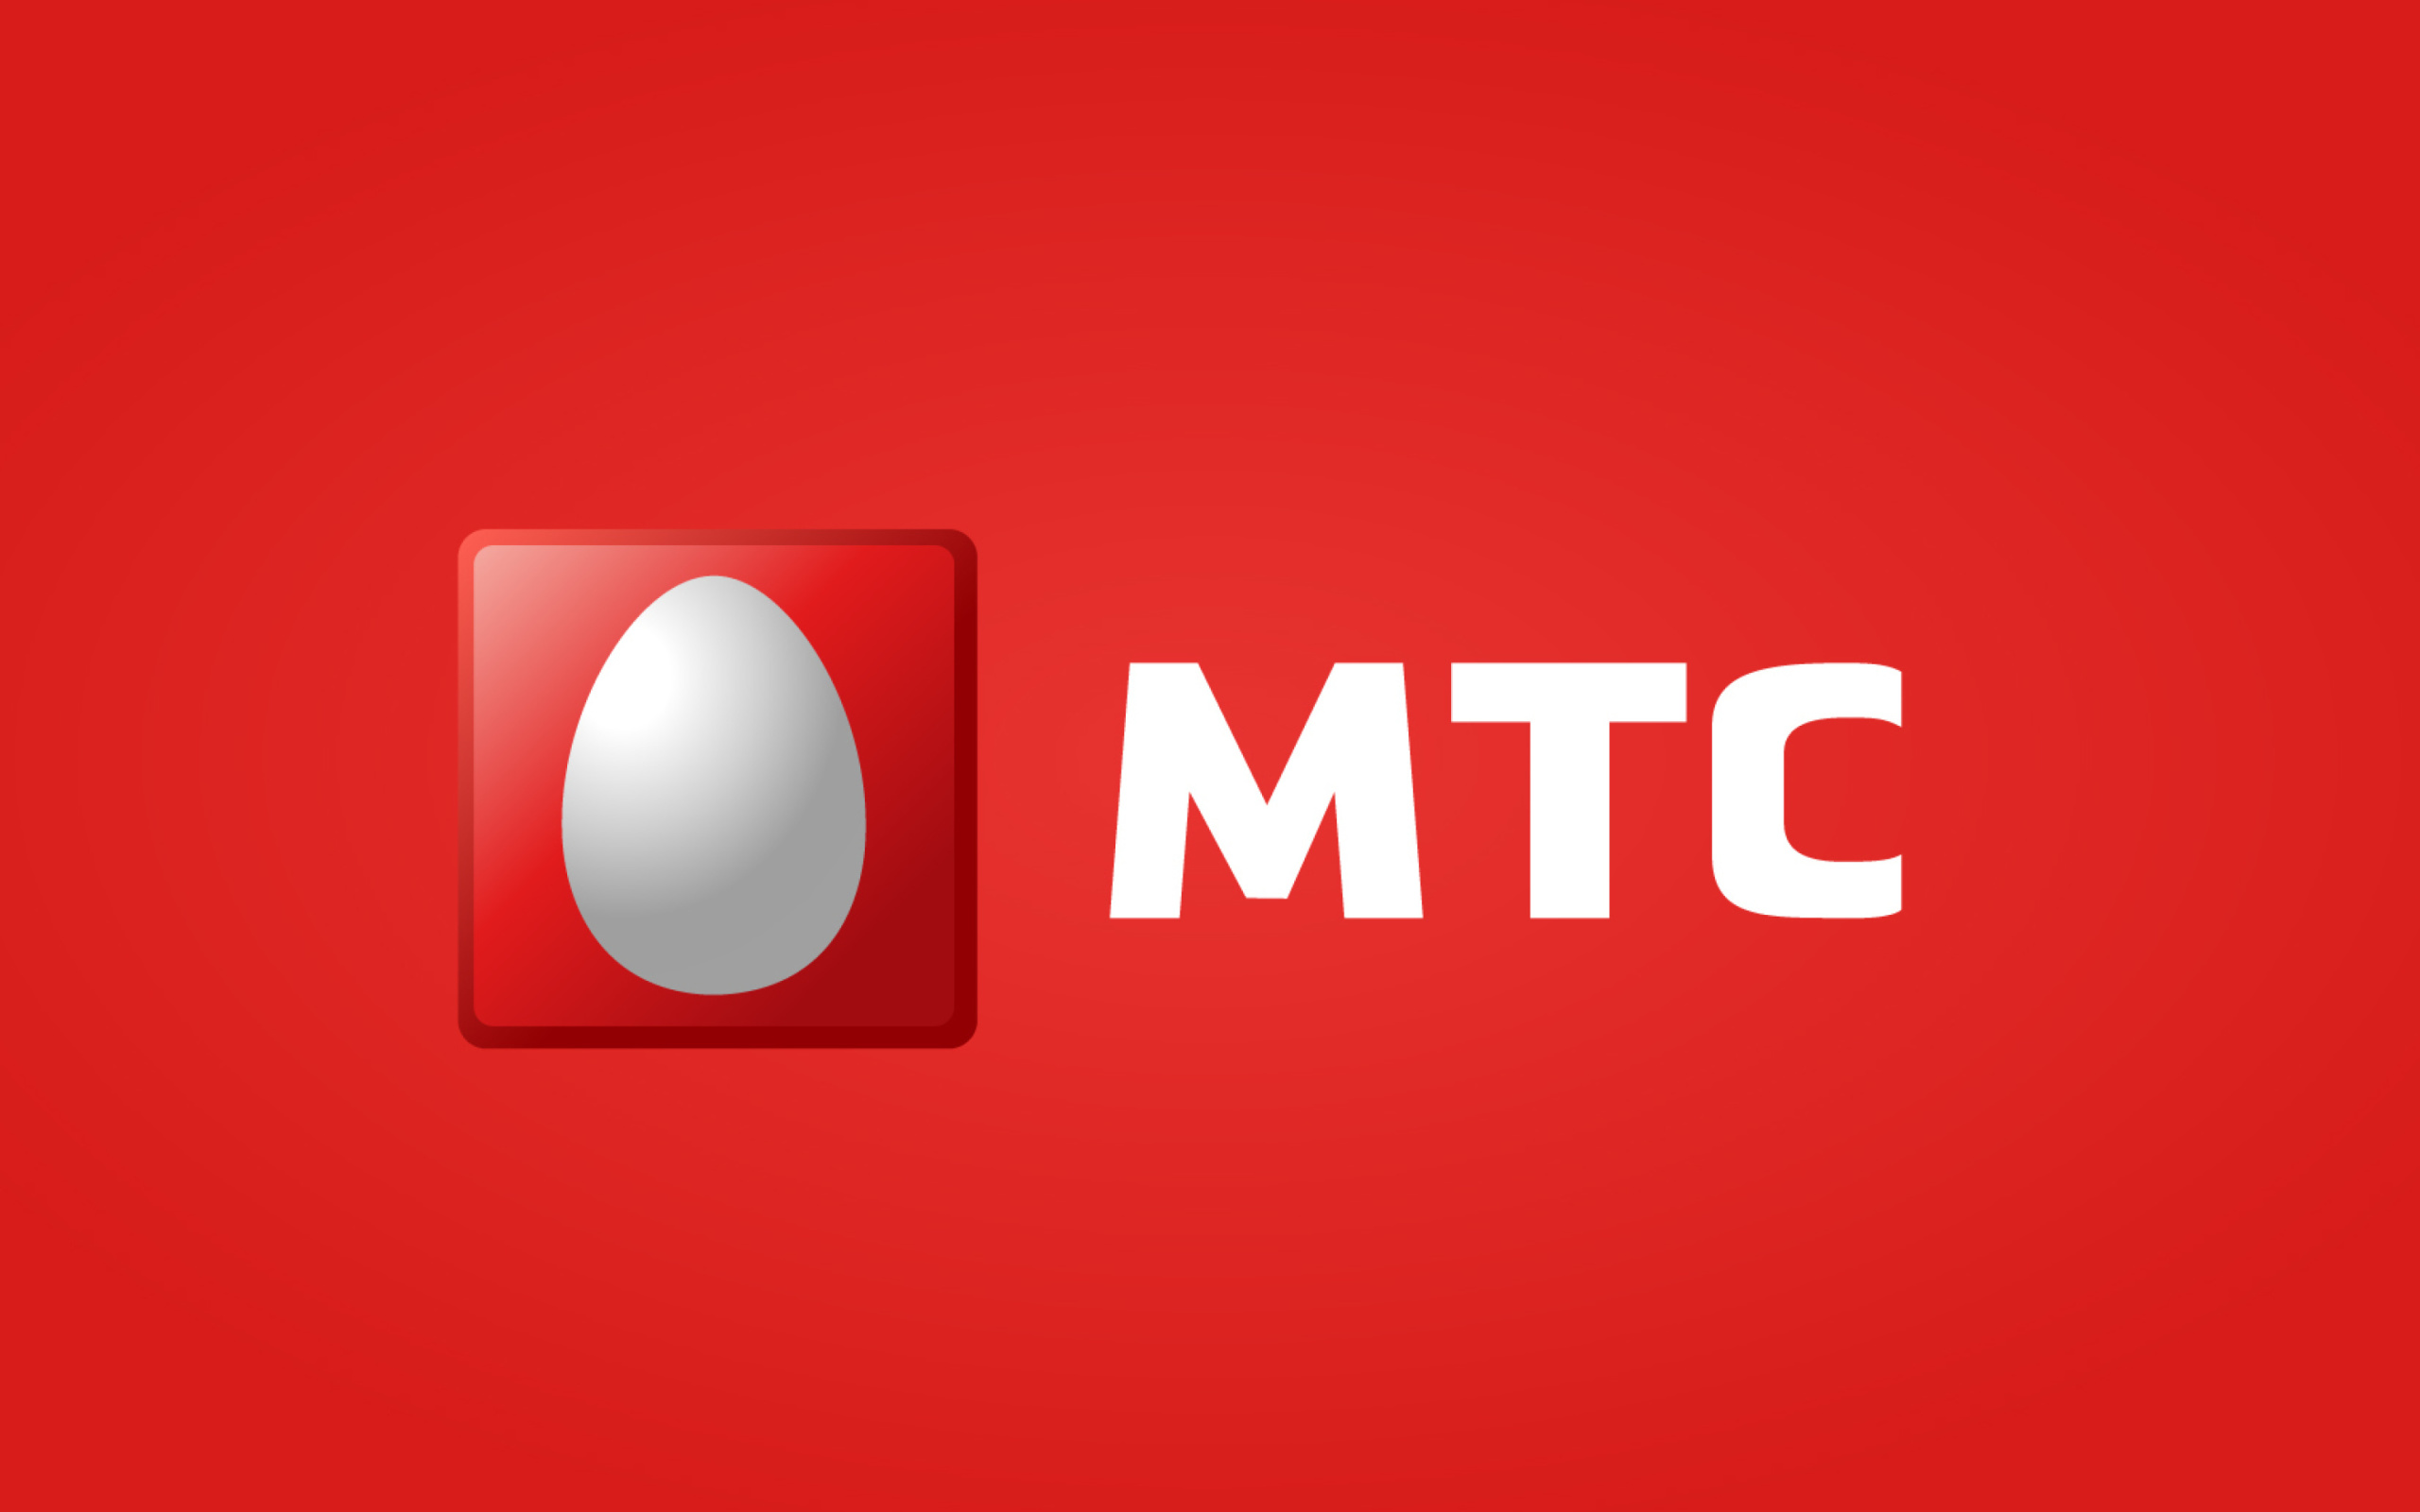 Мтс новгородская область. МТС logo. Новая эмблема МТС. МТС новый логотип 2020. EМС логотип.